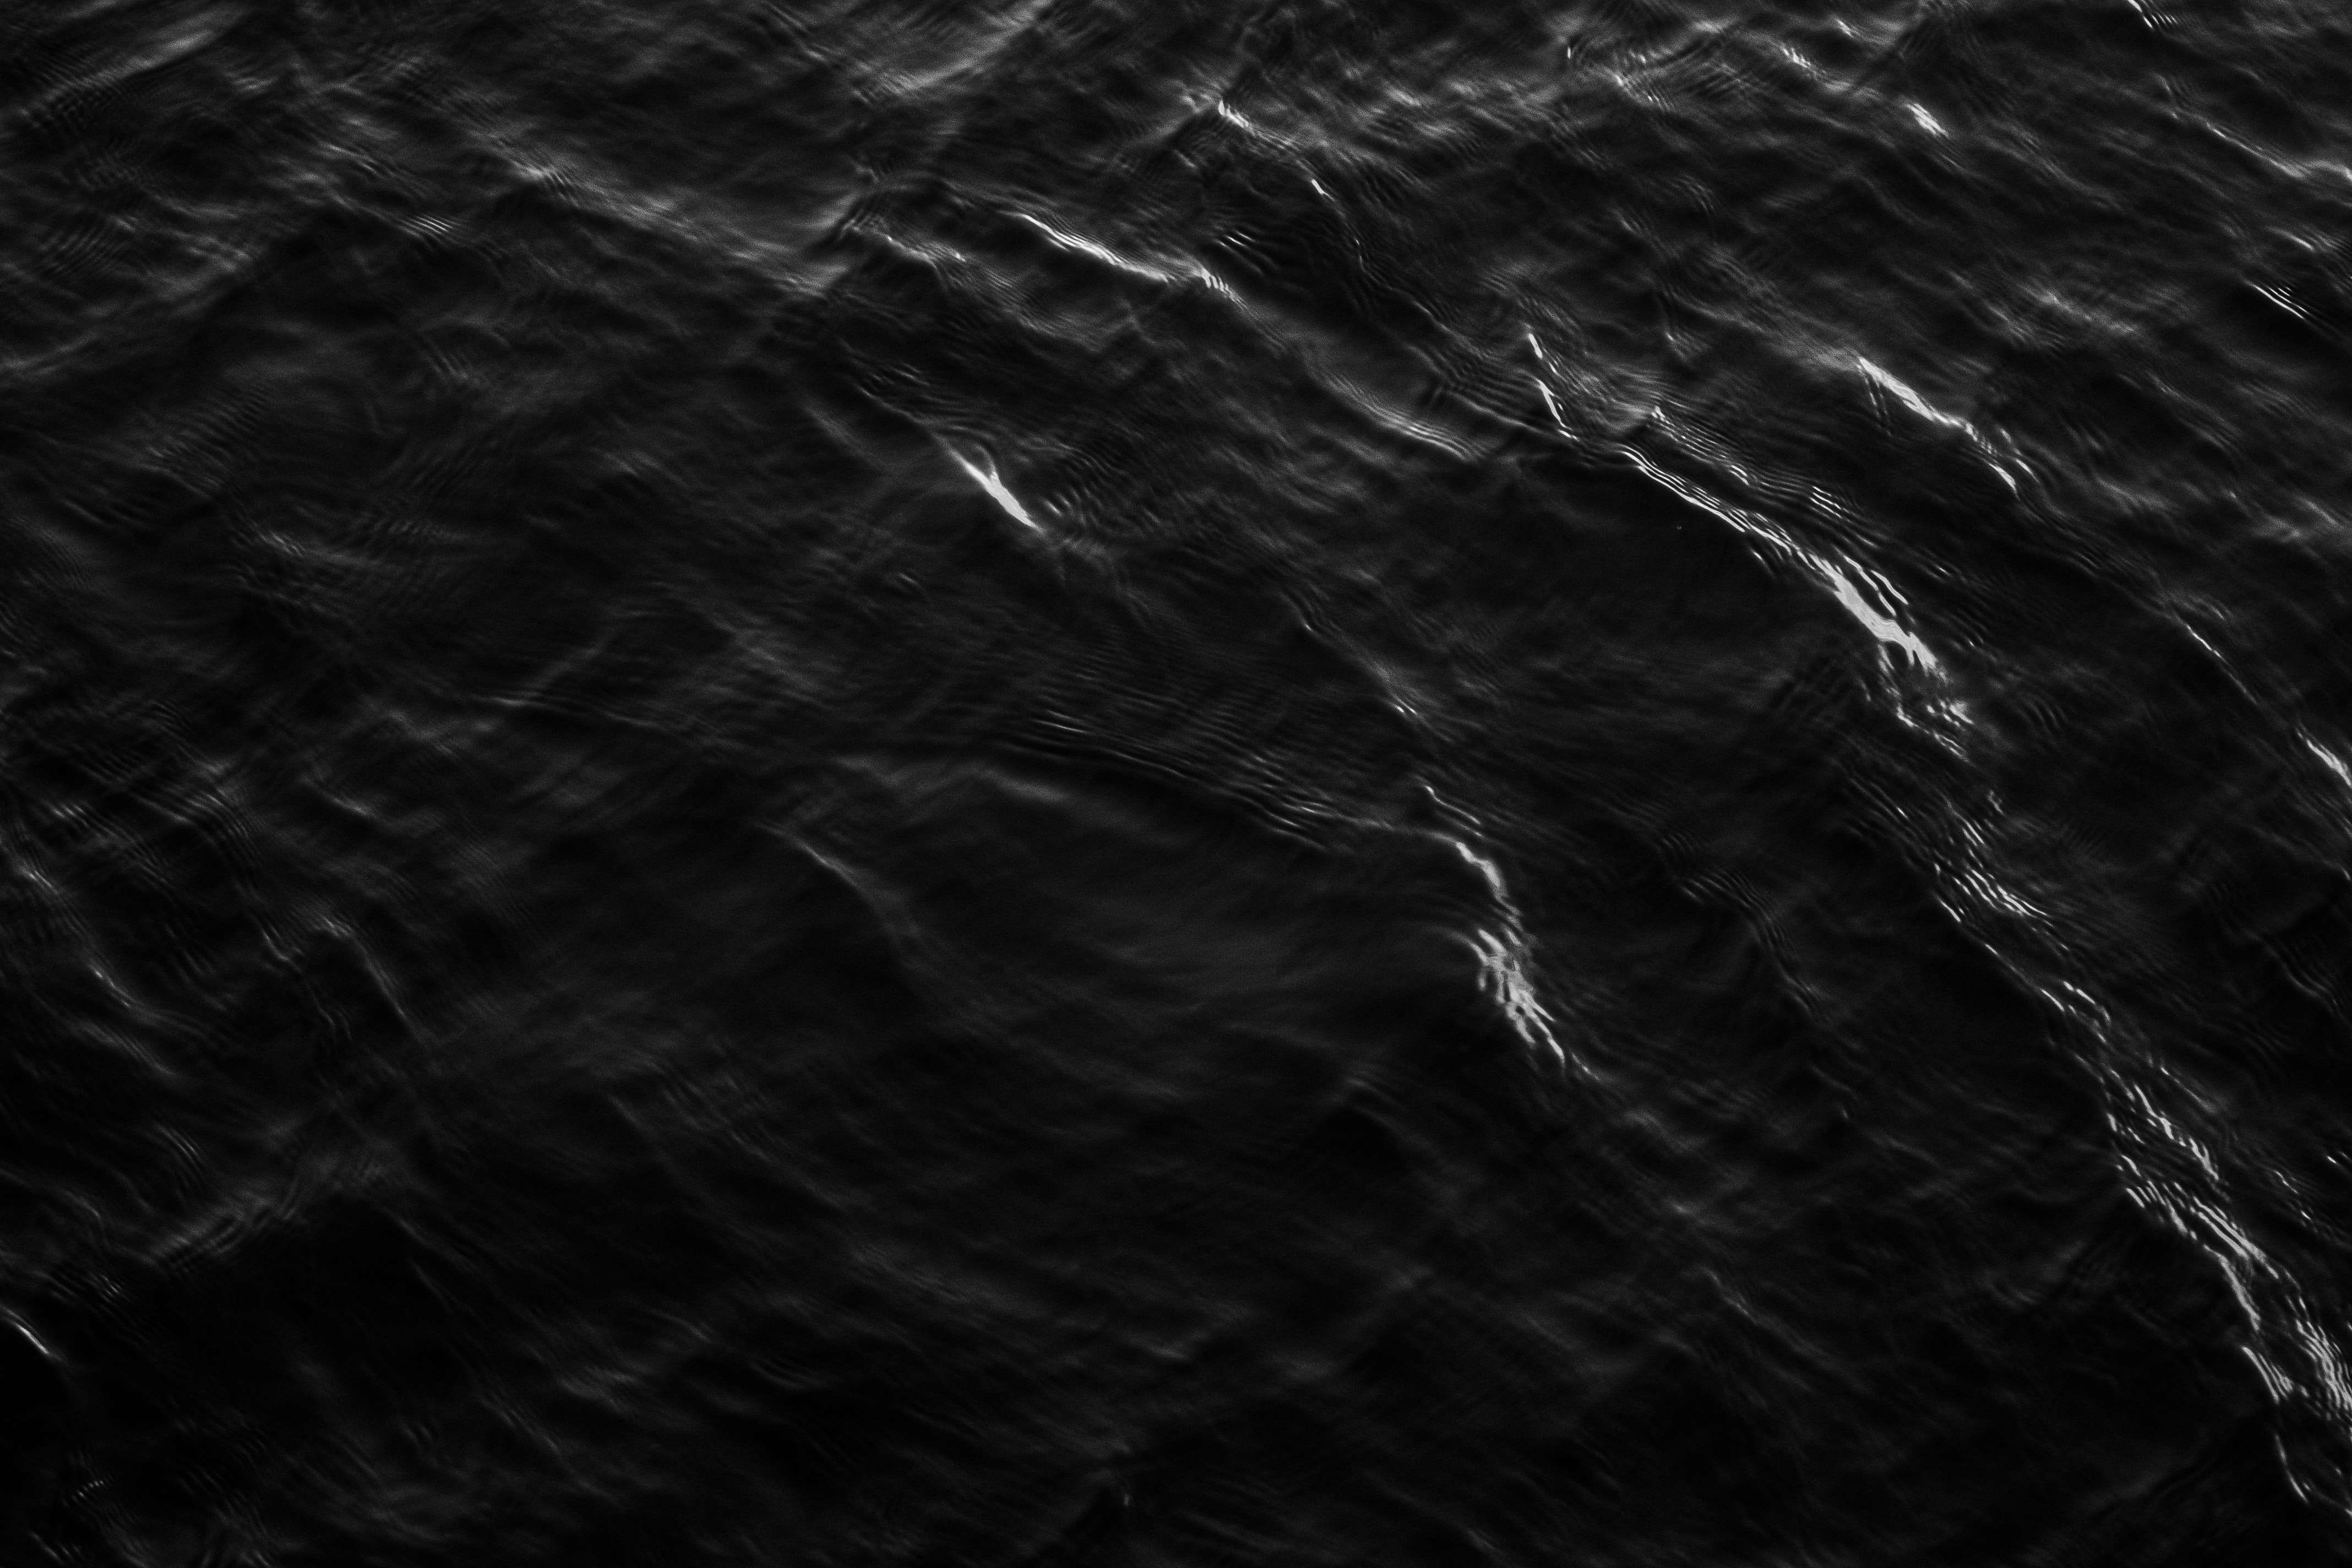 Black waves